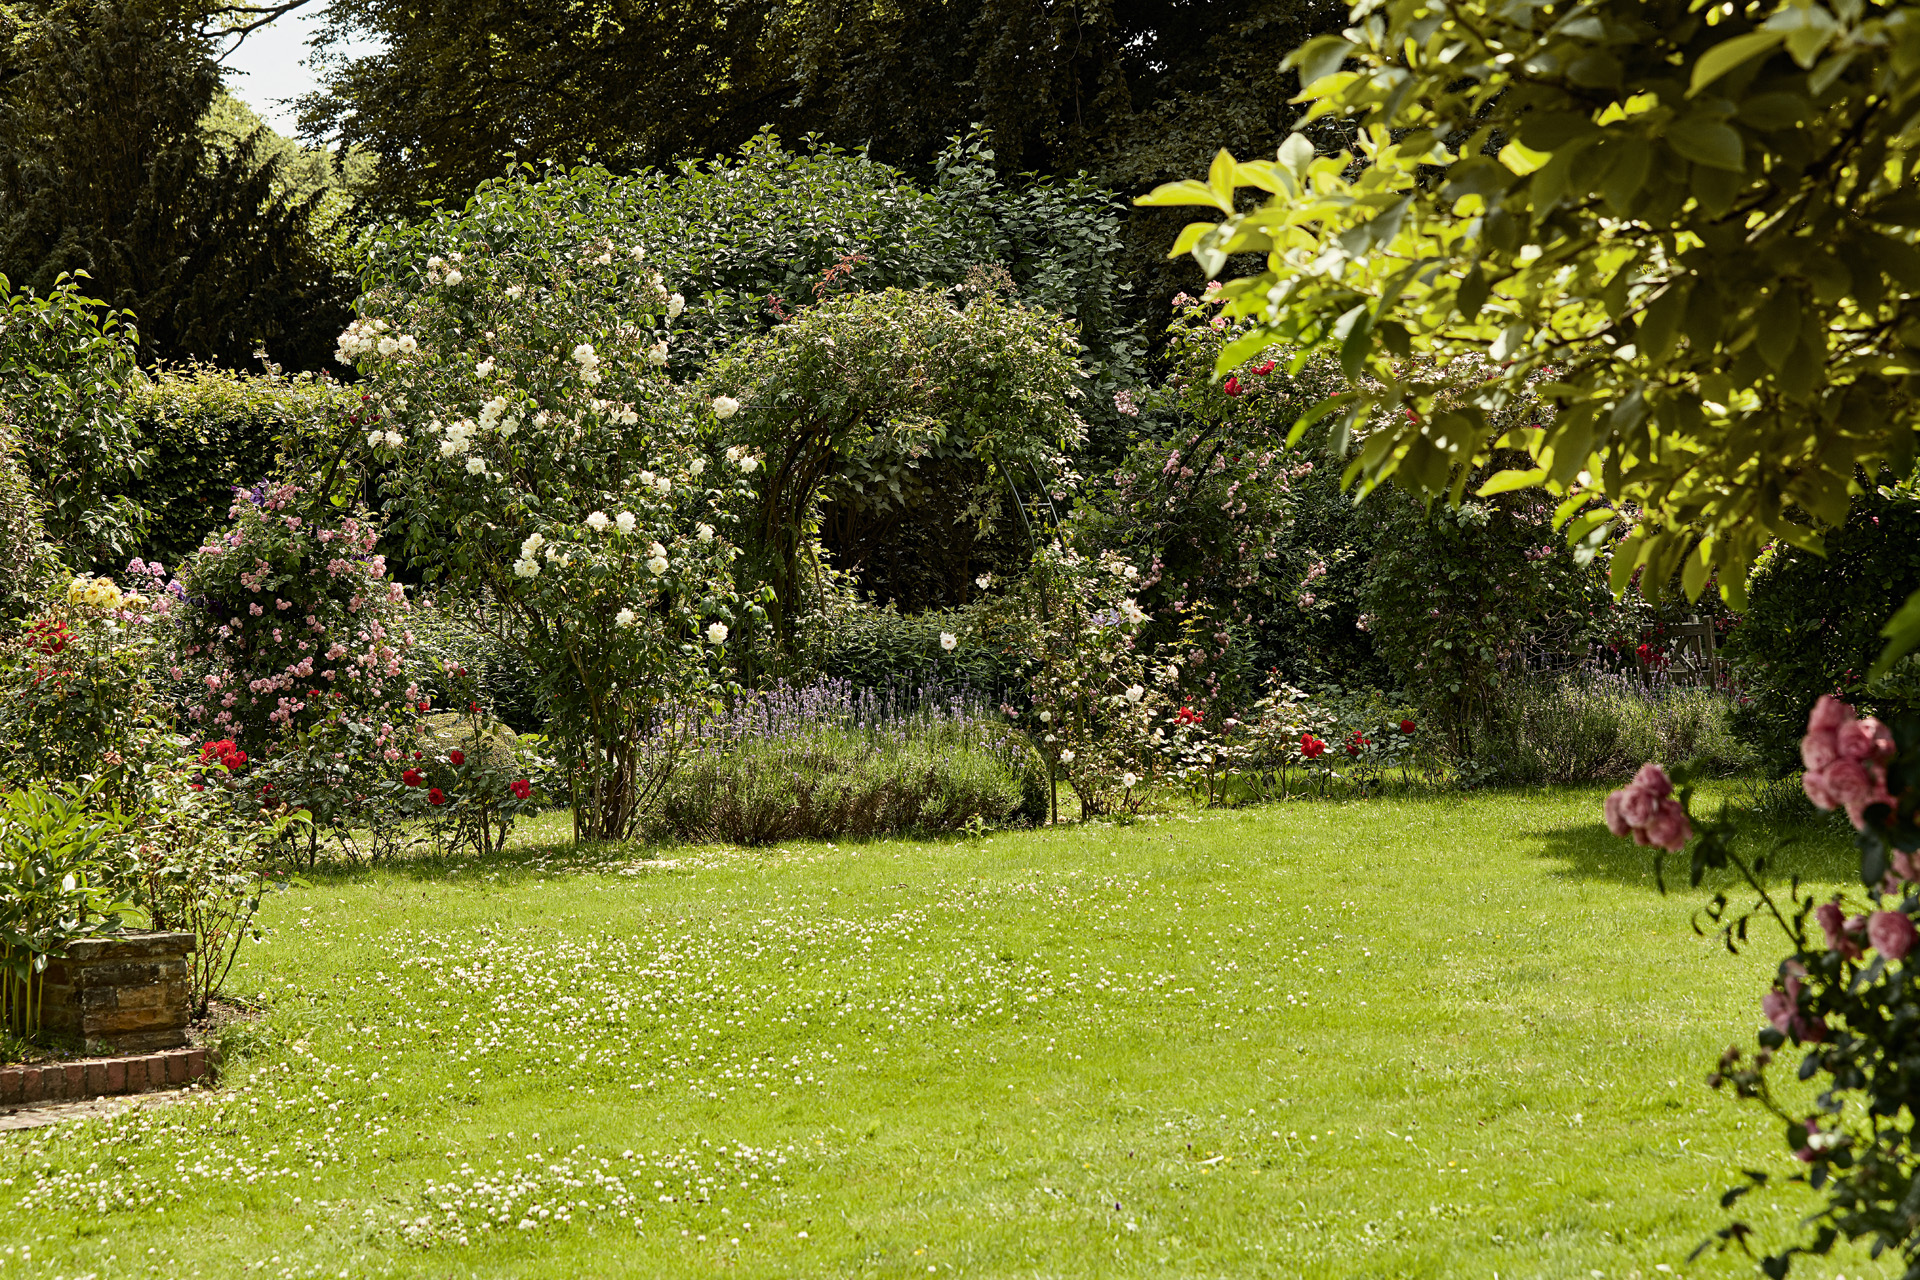  Un gran jardín con rosas, arbustos y un césped verde uniforme